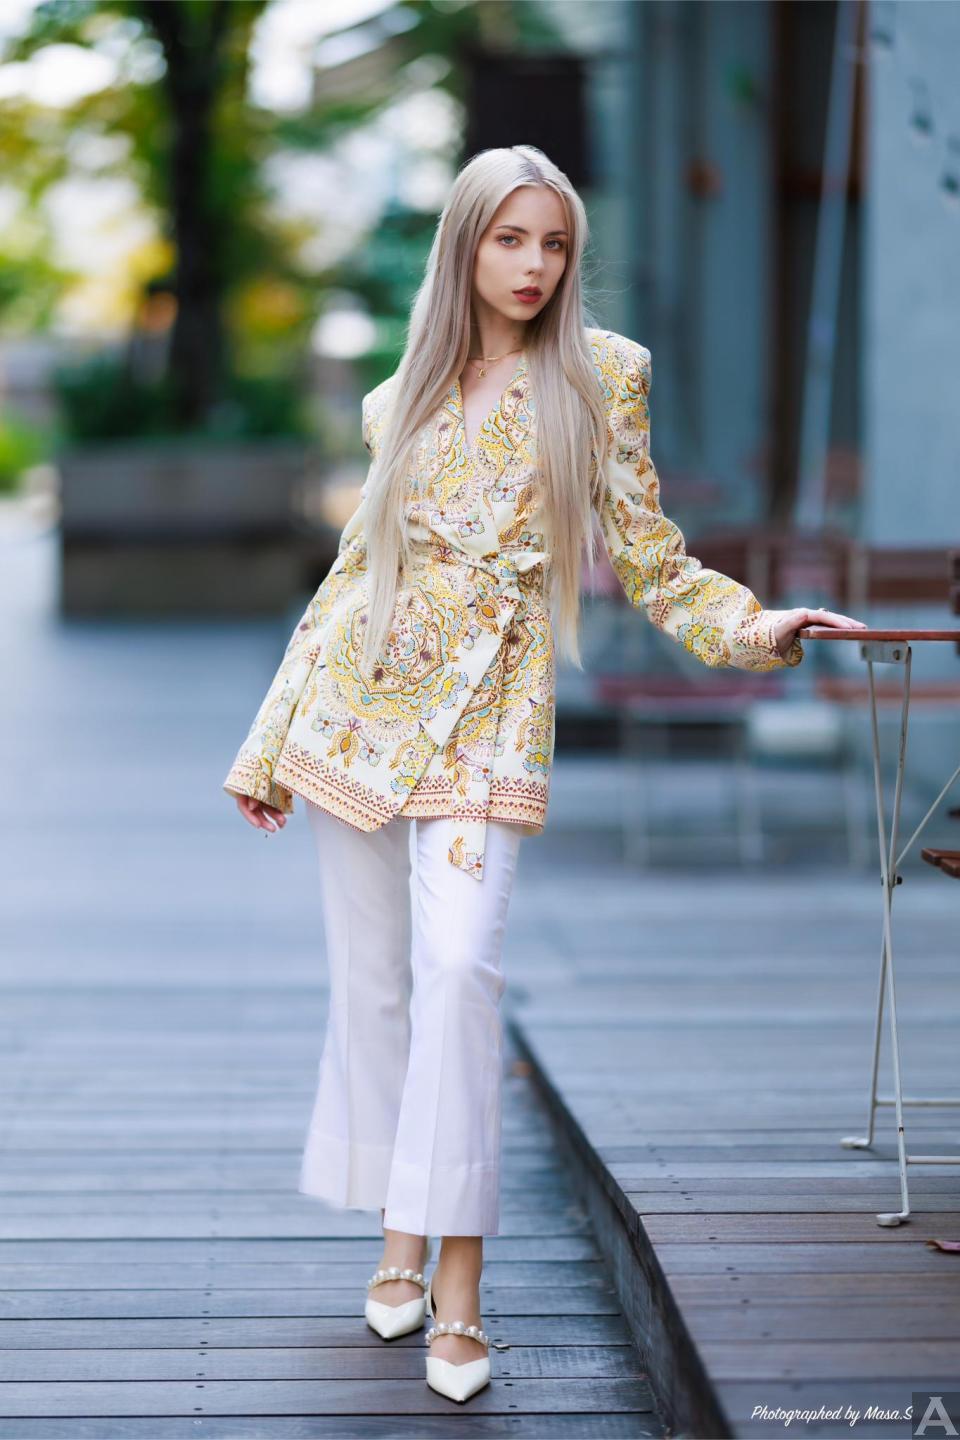 東京外国人モデル事務所アクアモデル所属の白人モデルのアハタ